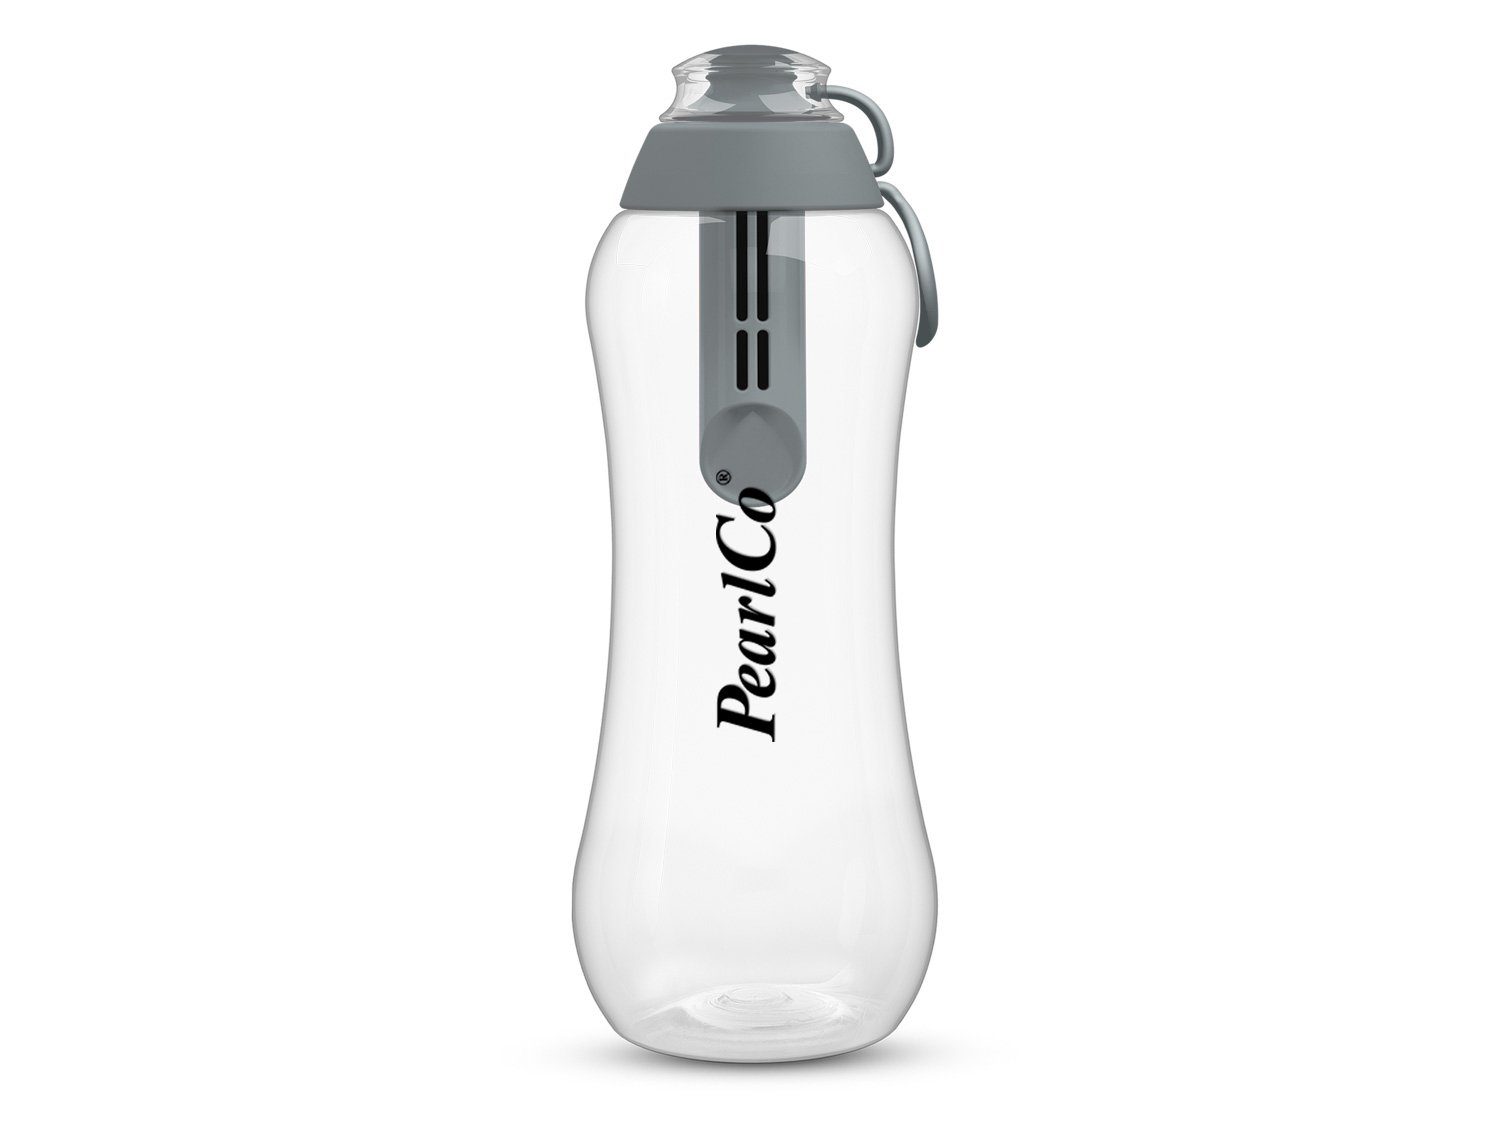 0,7 Trinkflasche Trinkflasche Liter Mit PearlCo PearlCo Filter grau